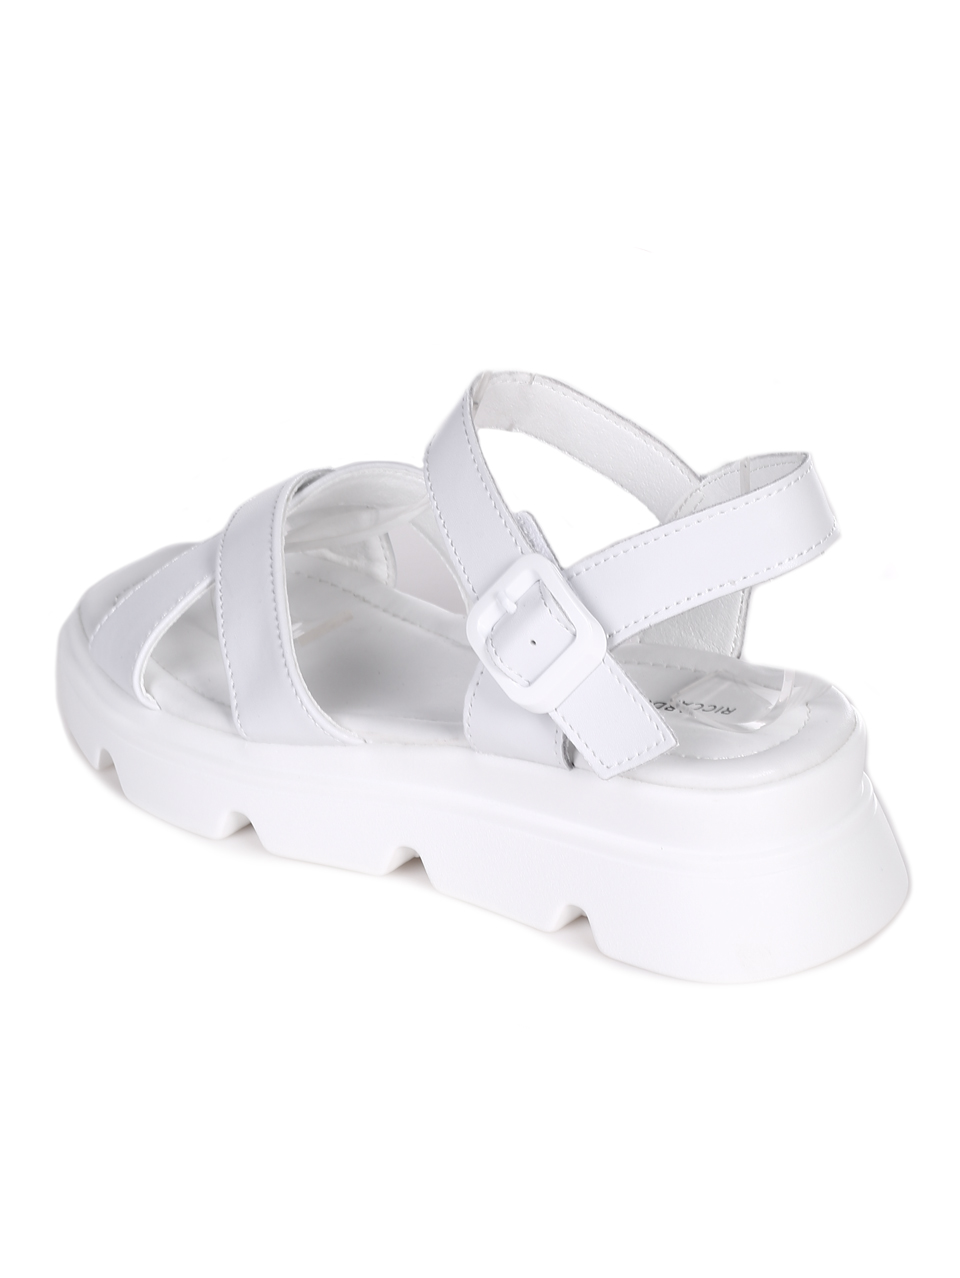 Ежедневни дамски сандали на платформа от естествена кожа 4AF-23158 white